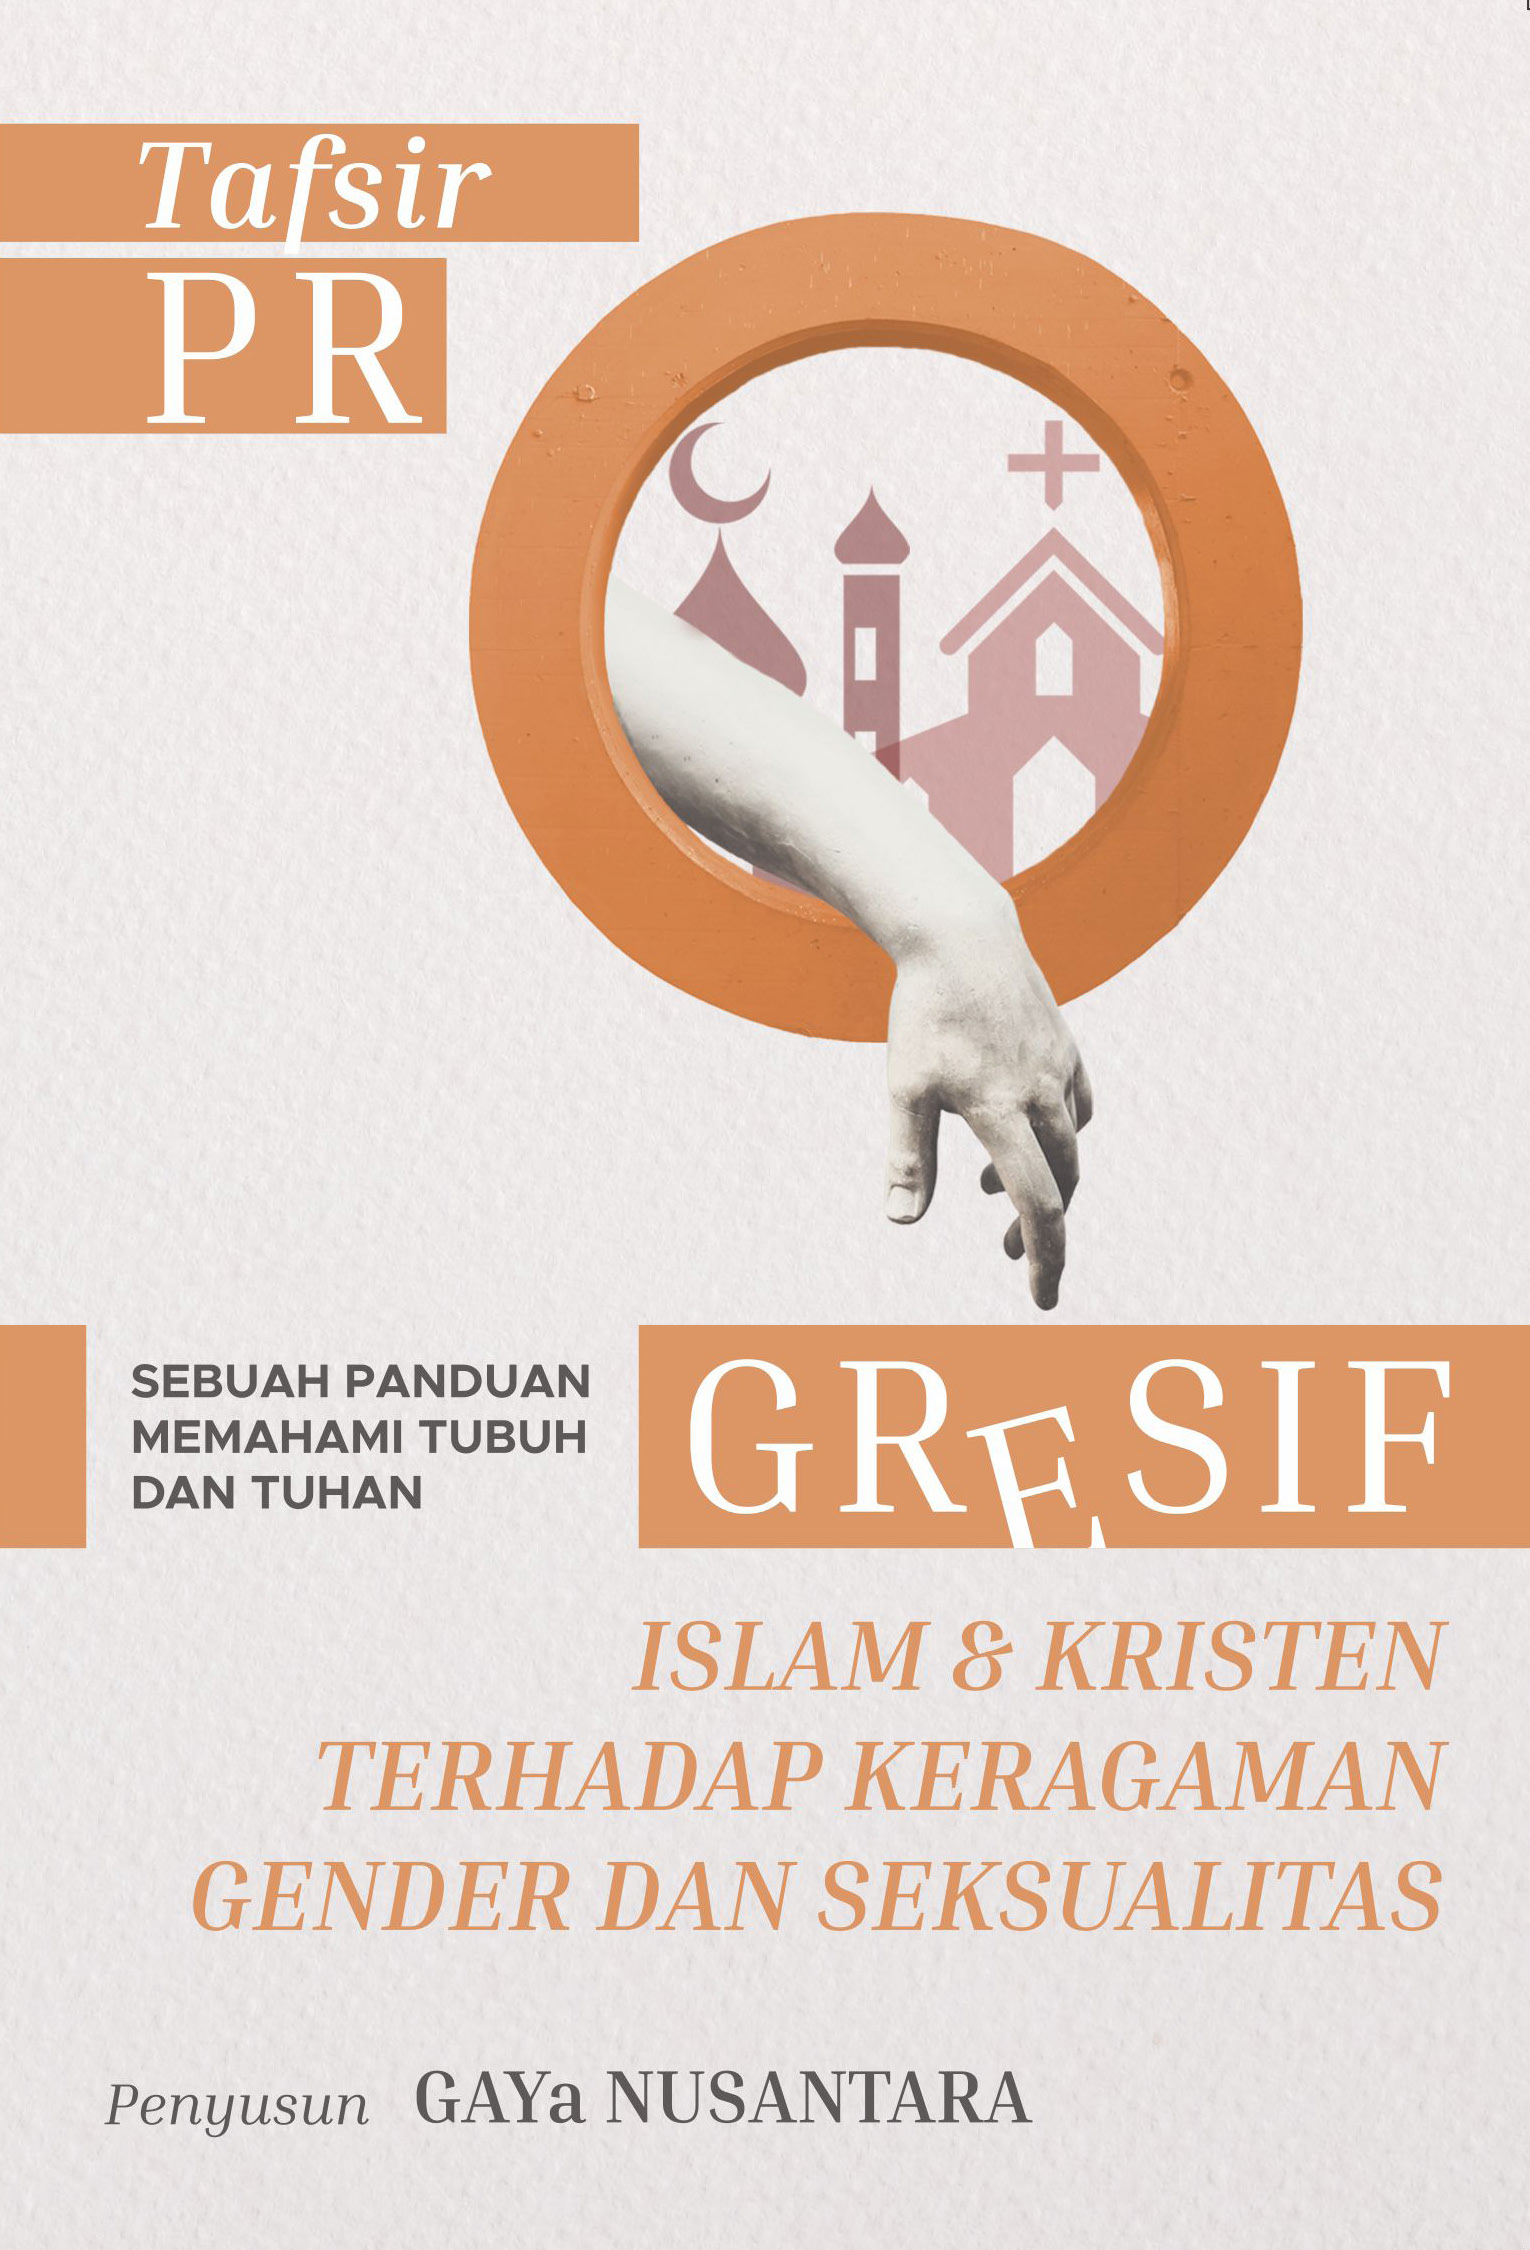 Read more about the article Tafsir Progresif Islam & Kristen Terhadap Keragaman Gender dan Seksualitas